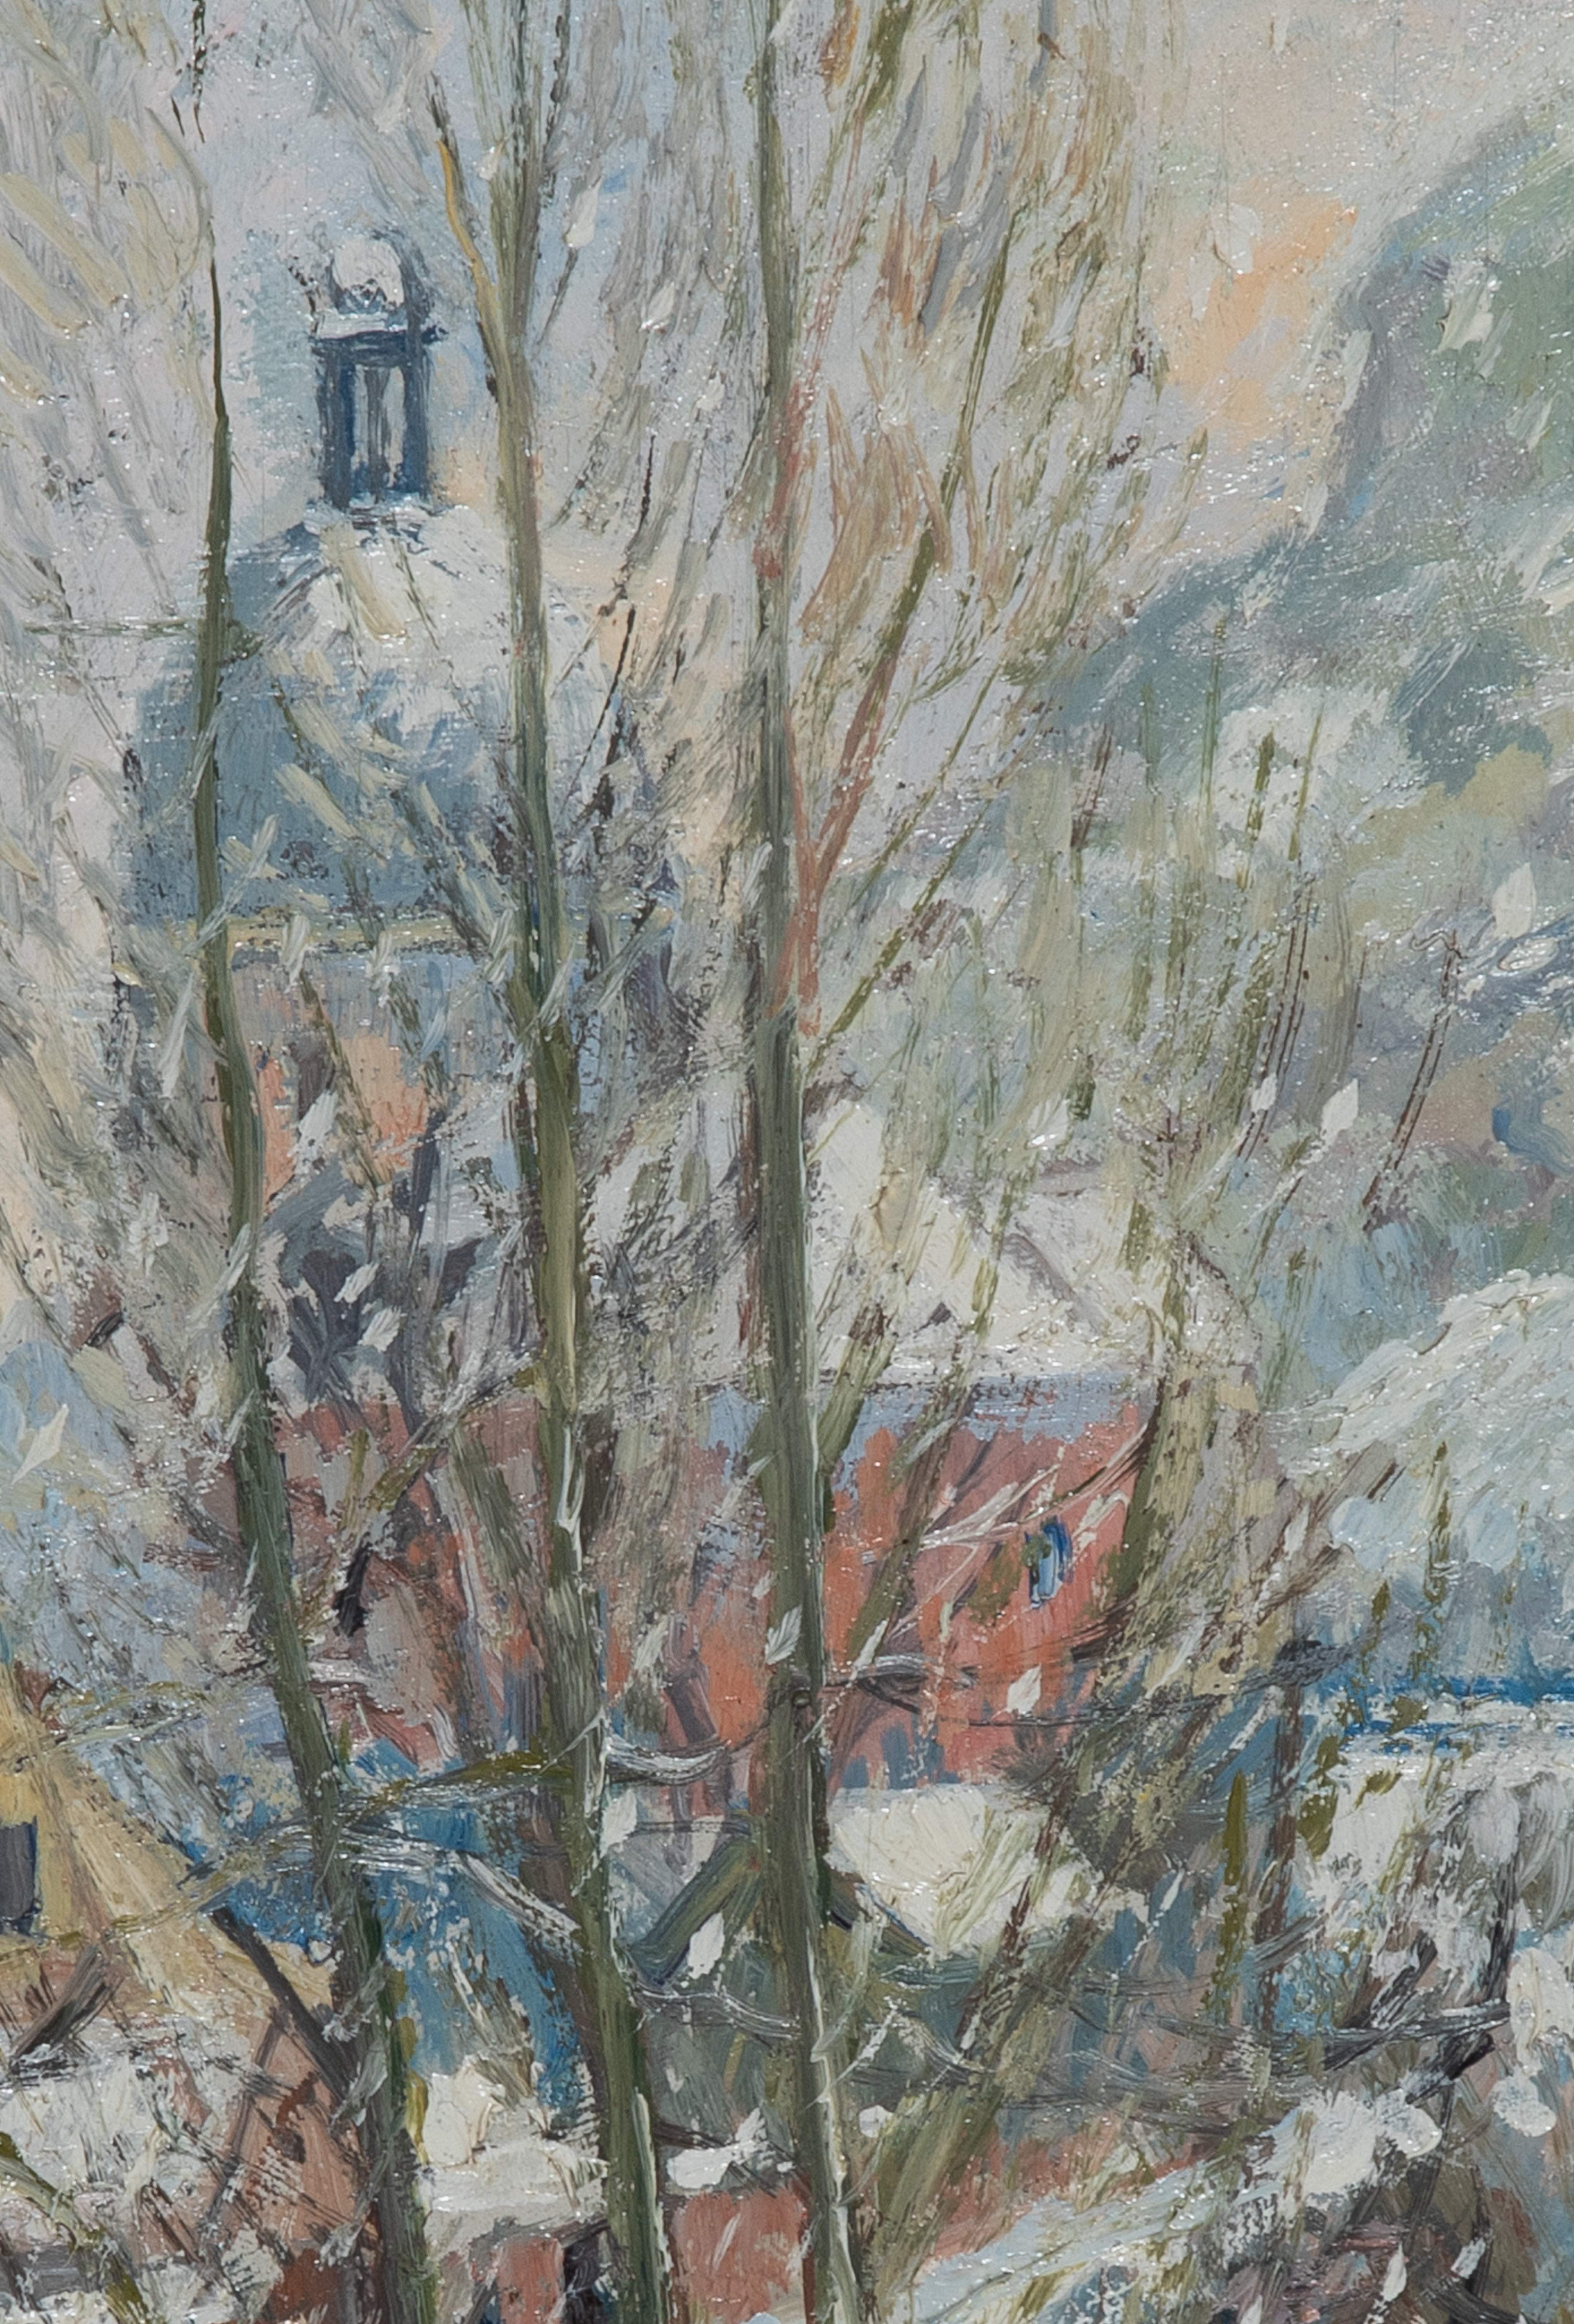 Les Andelys sous la Neige par Georges Manzana Pissarro (1871-1961)
Huile sur carton
46 x 38 cm (18 ¹/₈ x 15 pouces)
Signé en bas à droite, Manzana
Exécuté vers 1895

Peinte du vivant de Camille Pissarro, cette œuvre est très rare.

Cette œuvre est